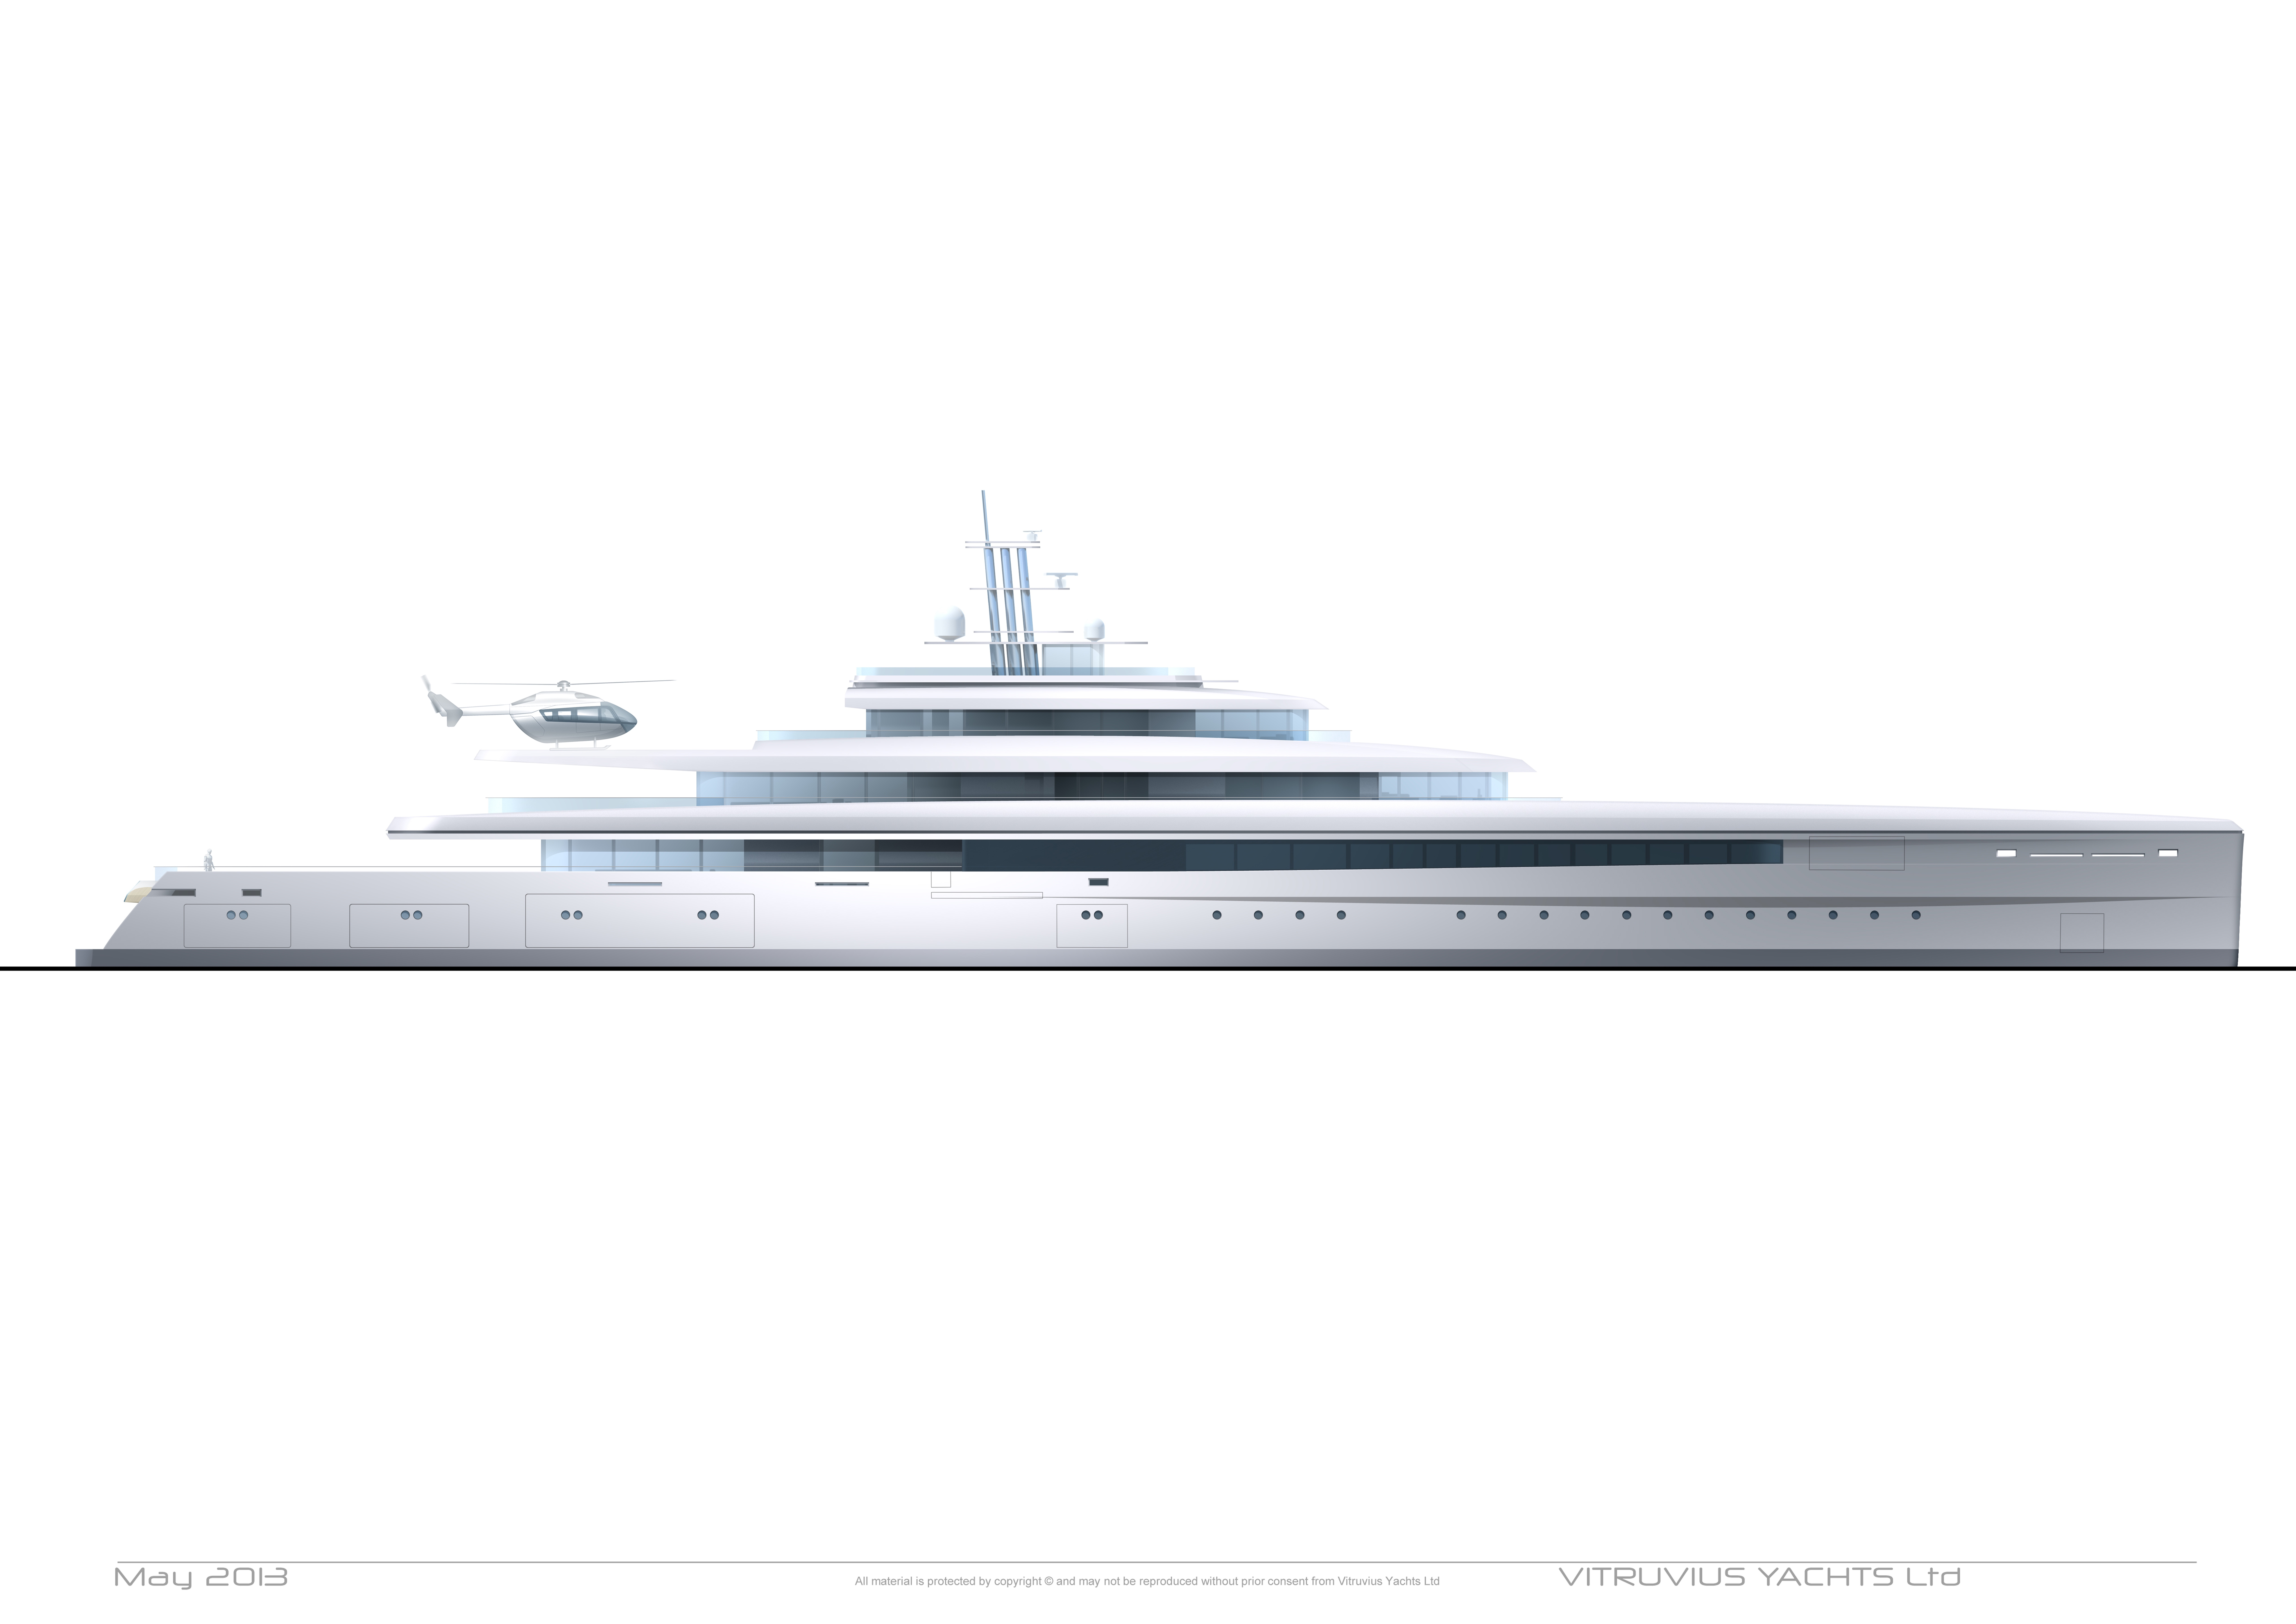 Acquaintance yacht concept rendering